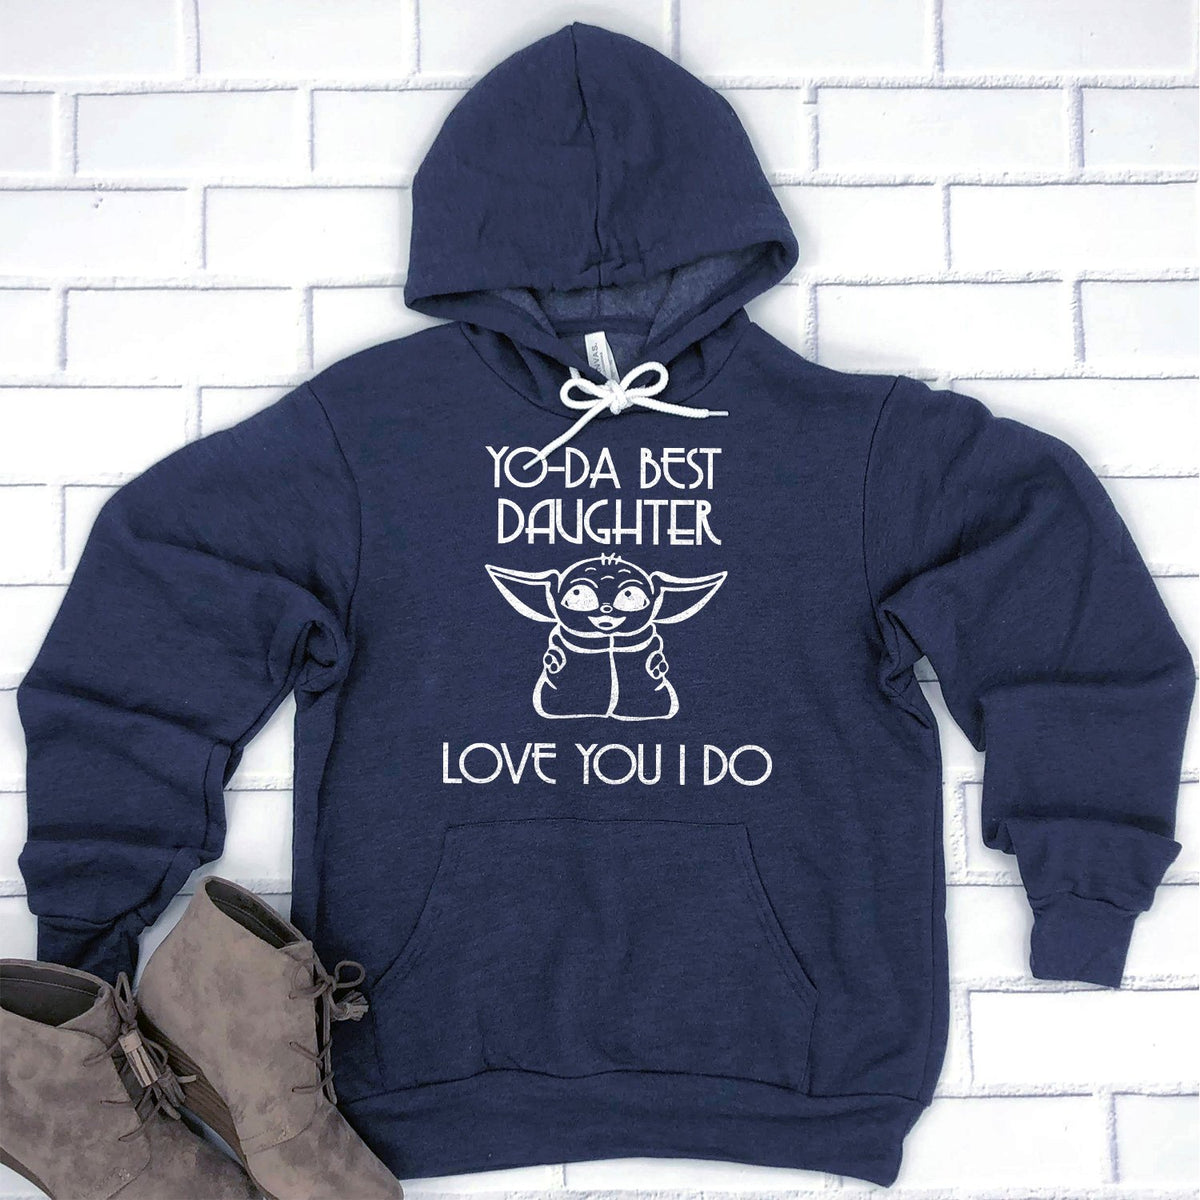 Yo-Da Best Daughter Love You I Do - Hoodie Sweatshirt